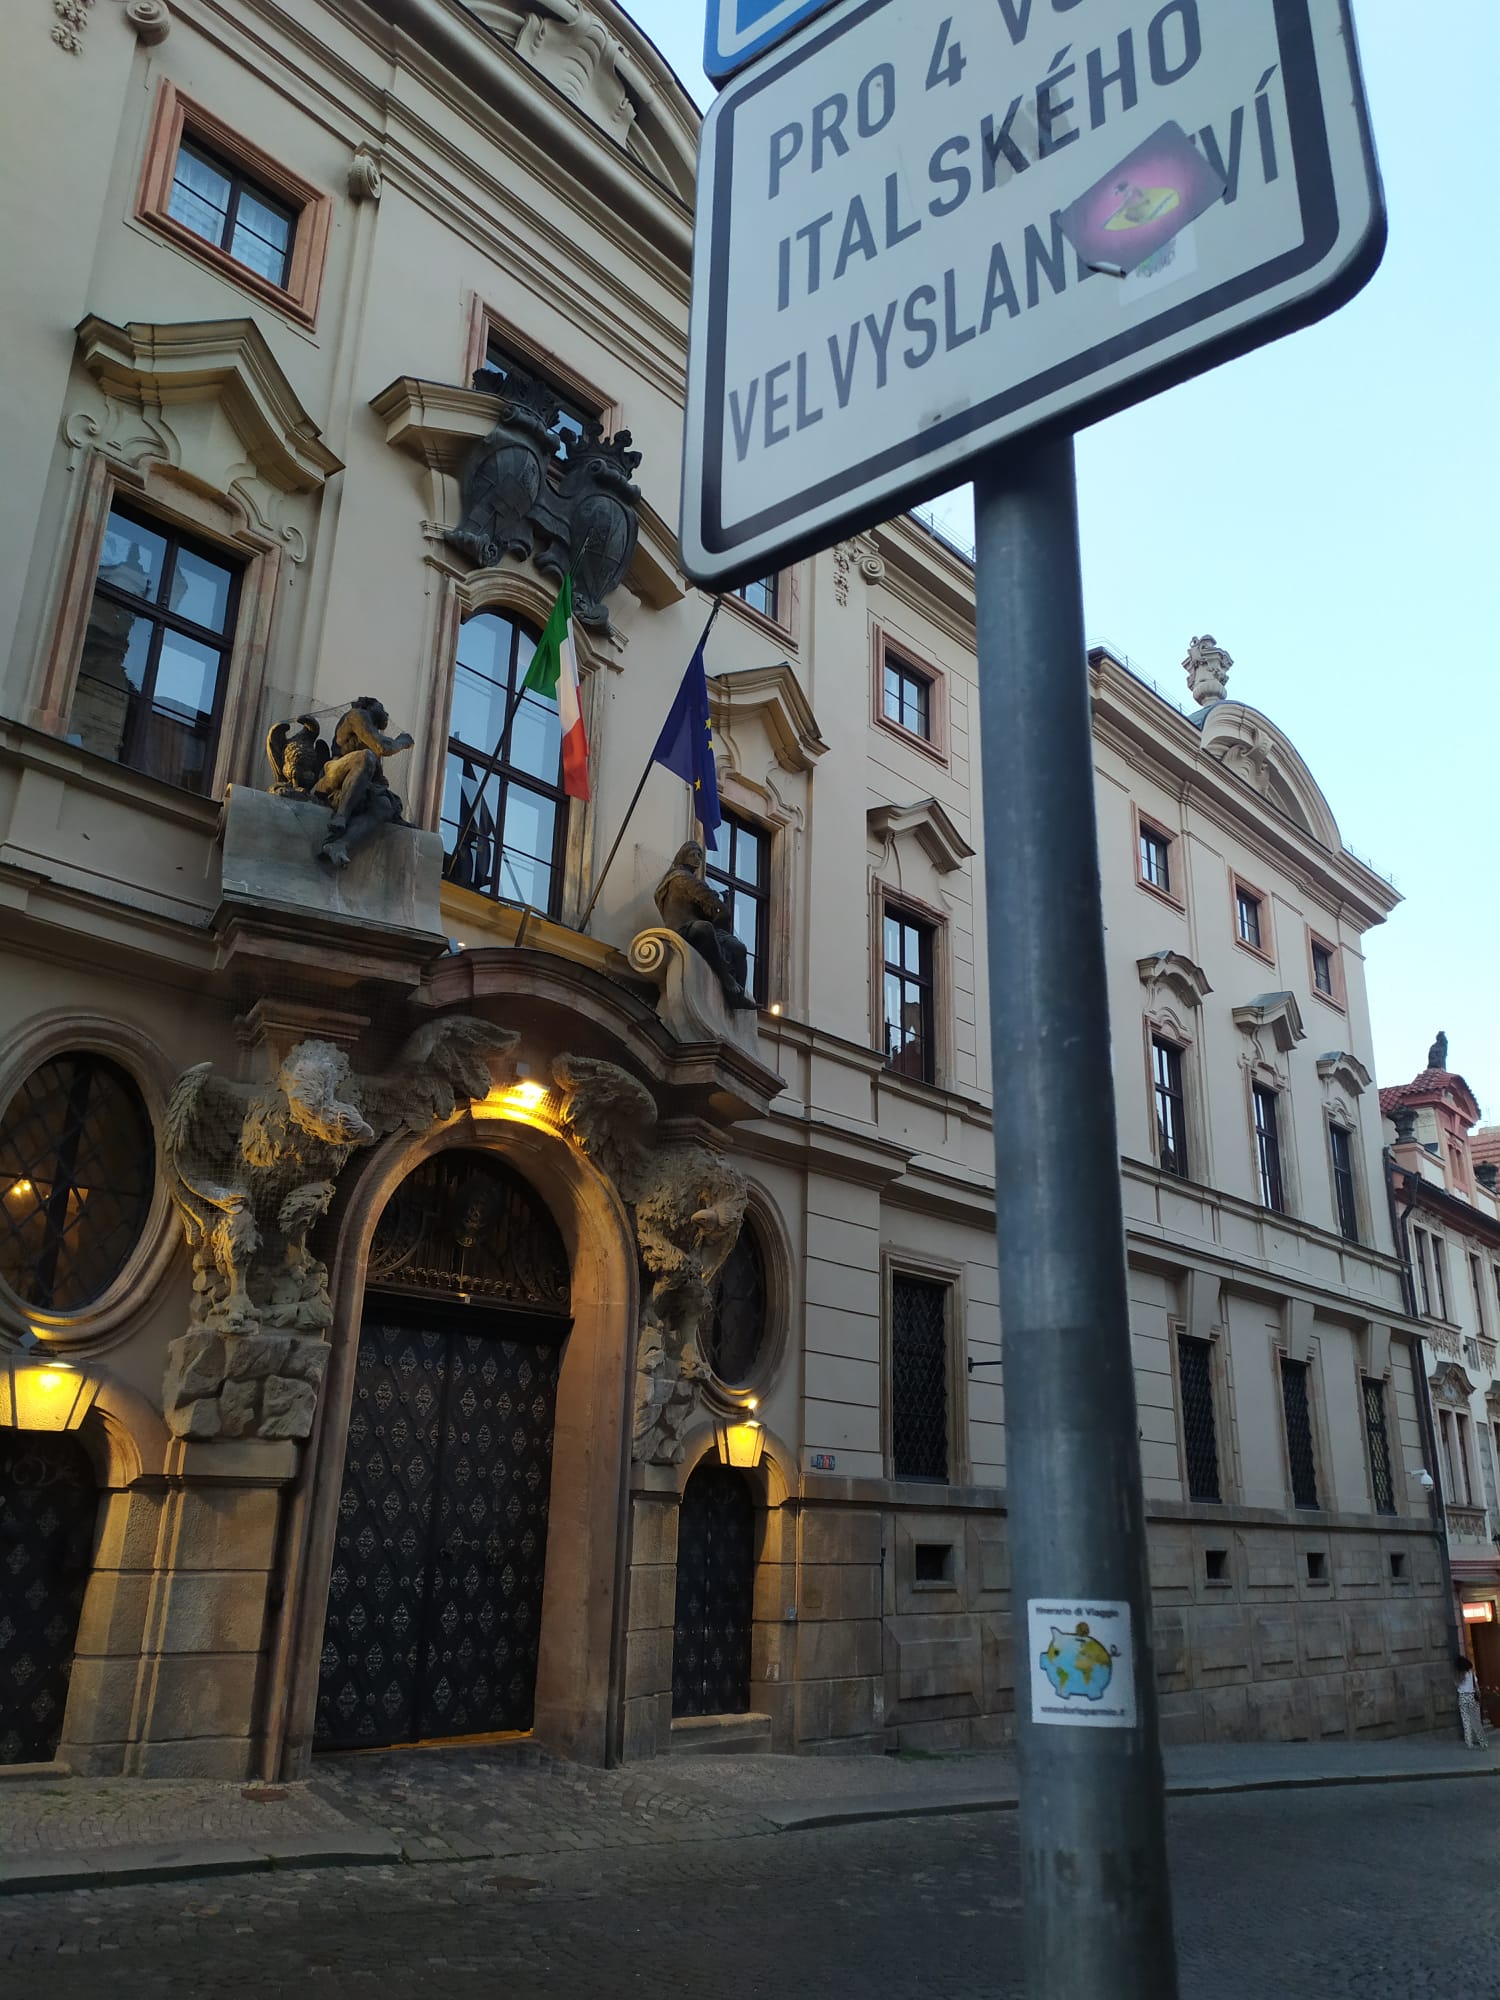 l'Ambasciata d'Italia Praga (foto M. Cuomo - NonSoloRisparmio.it)